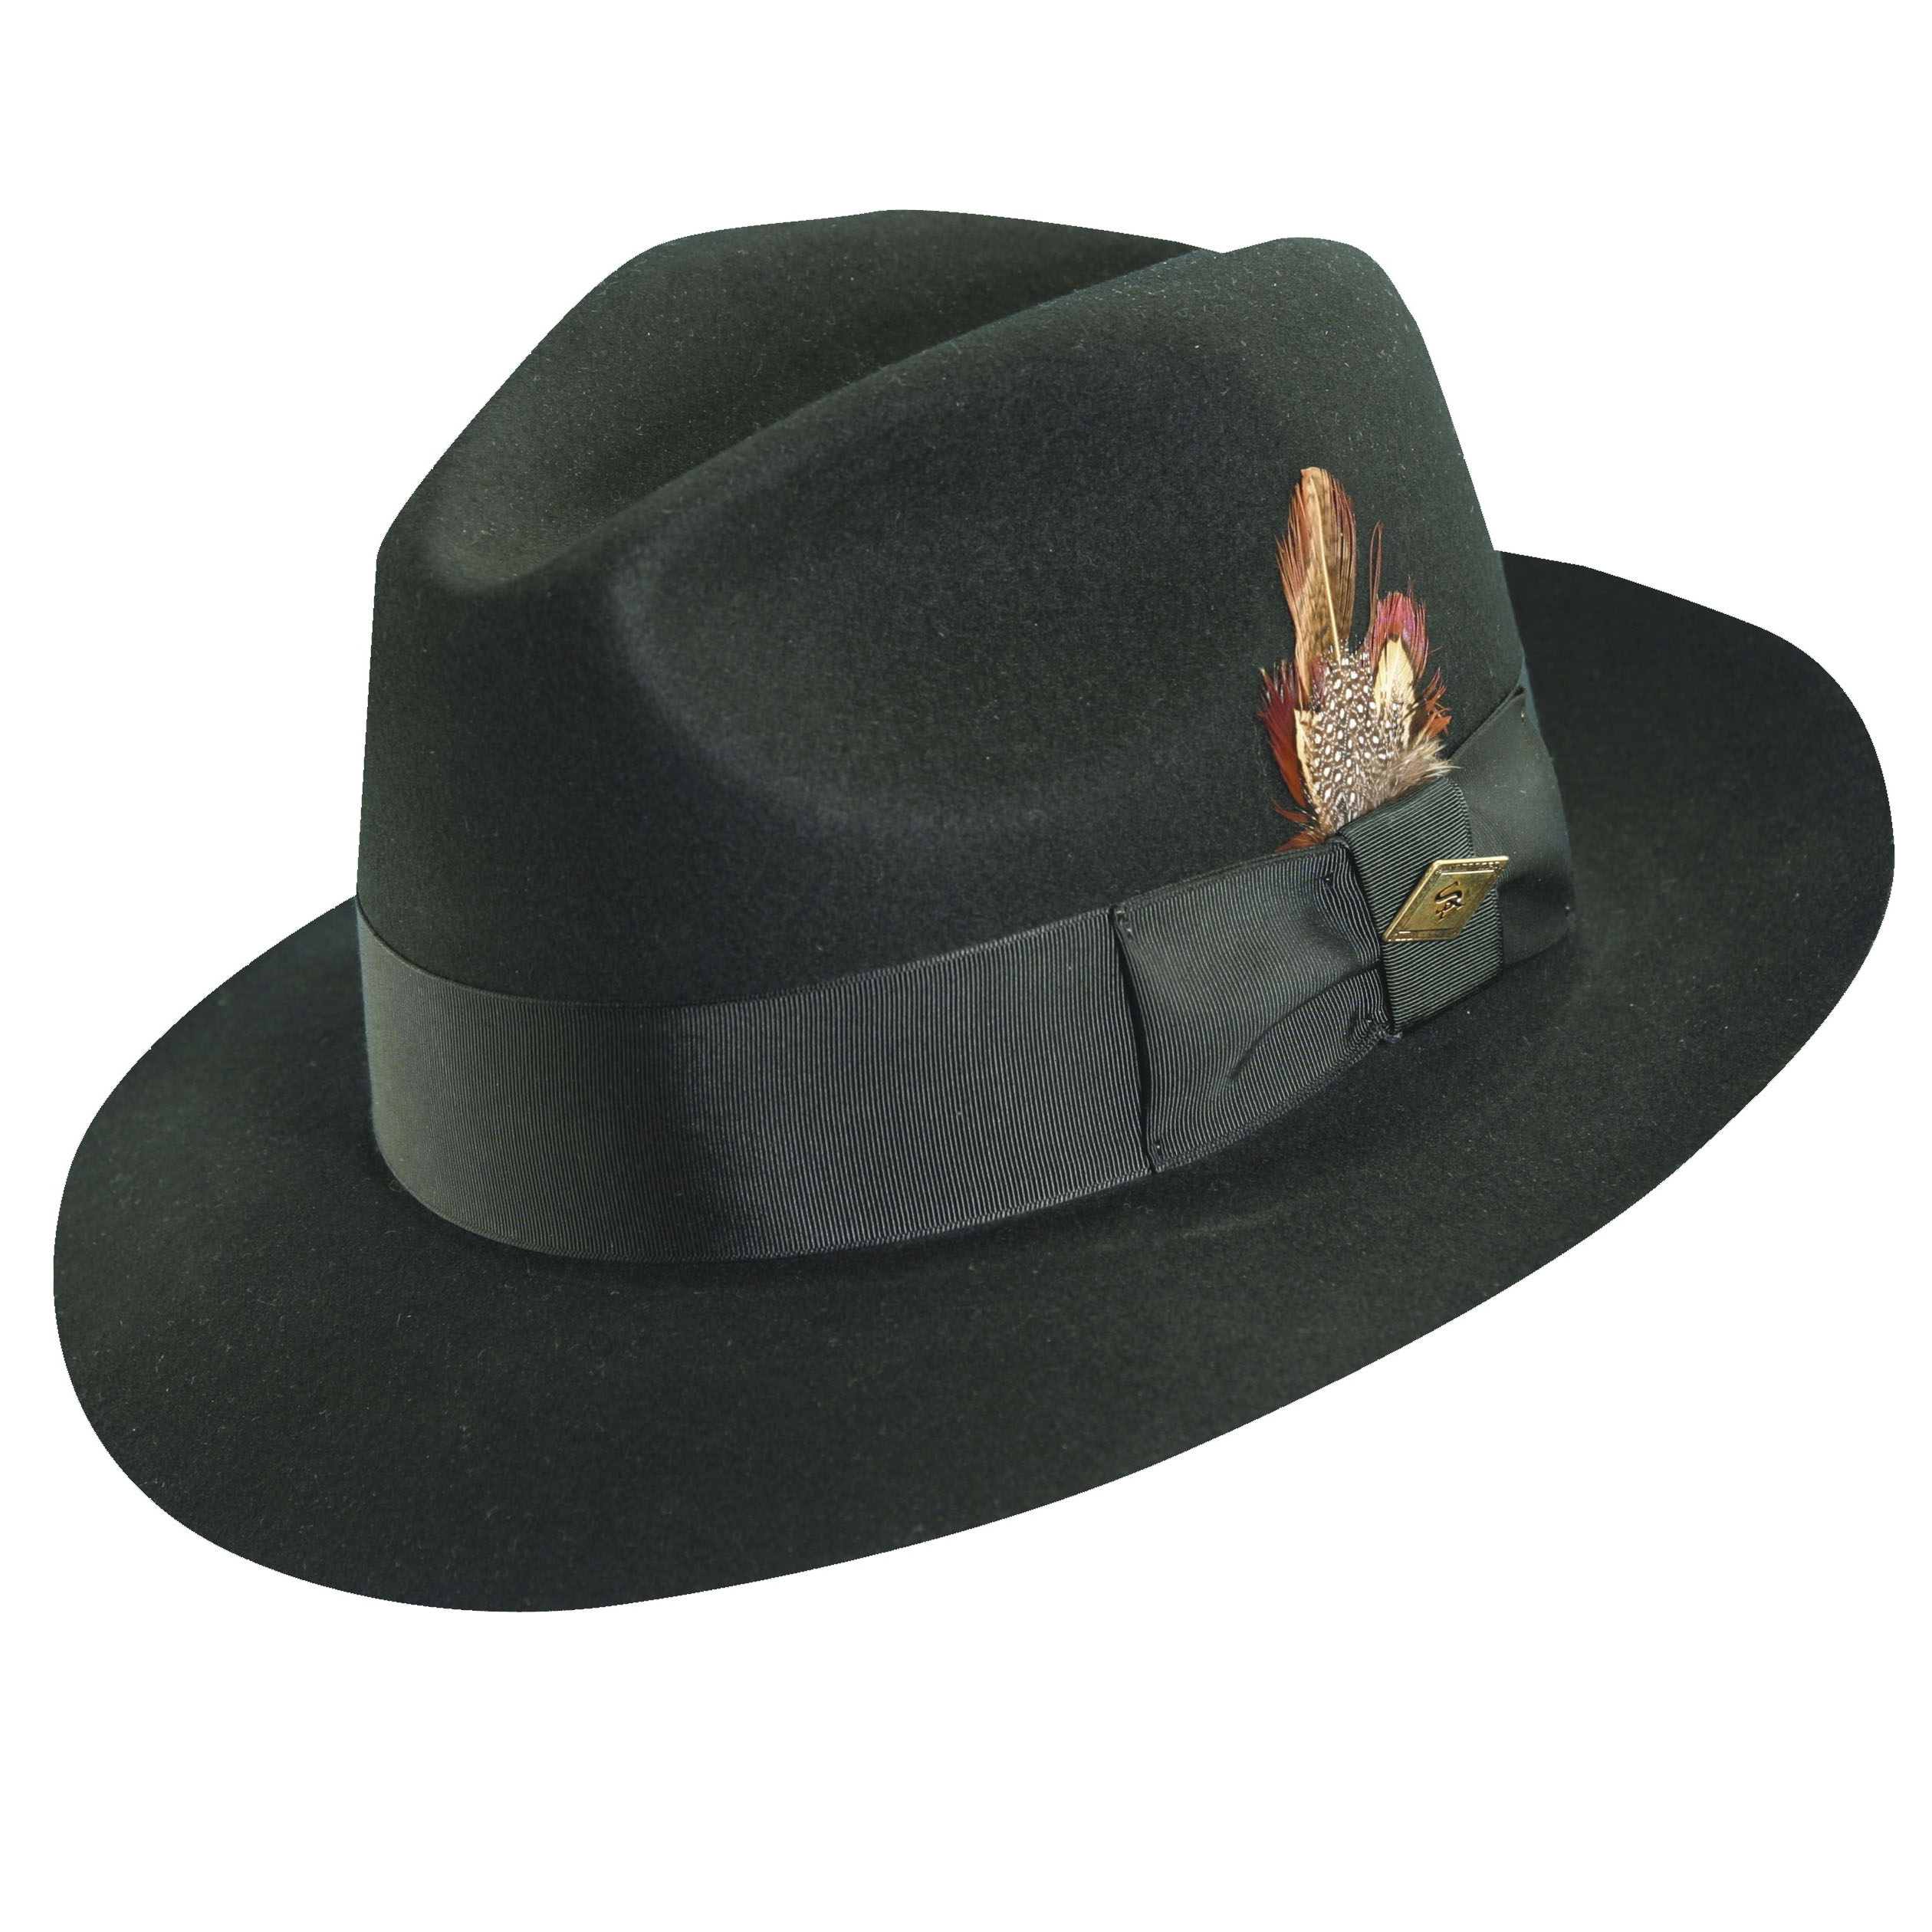 She this hat. Шляпа мужская Fedora Indiana Jones. Классическая шляпа. Модные мужские шляпы. Шляпы мужские классические.